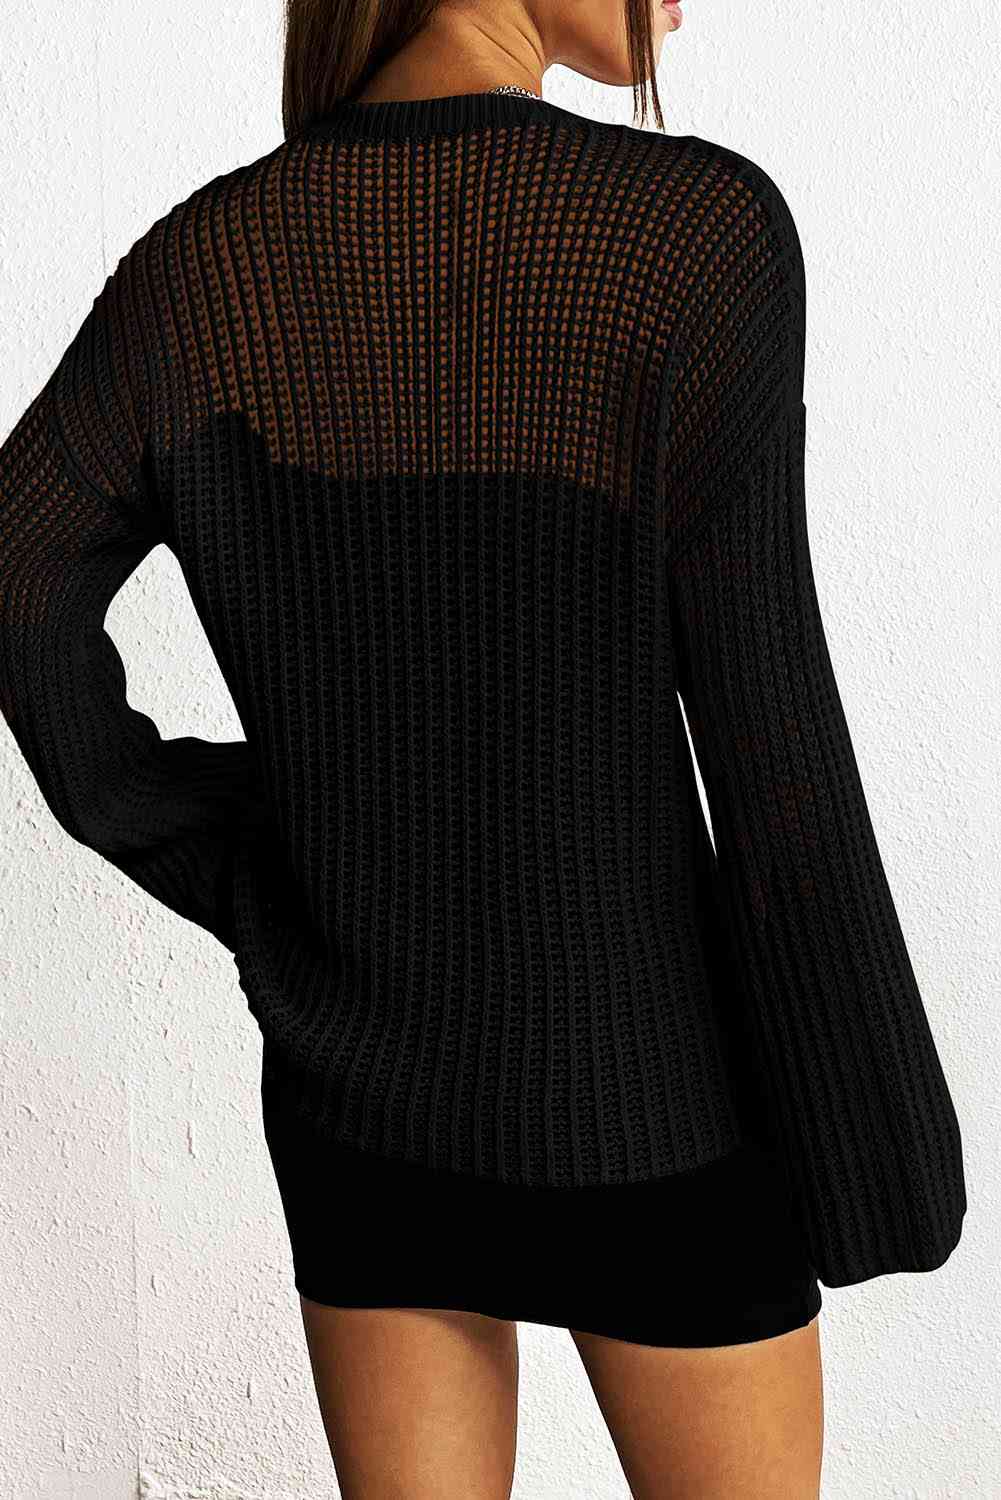 Star Rib-Knit Sweater   